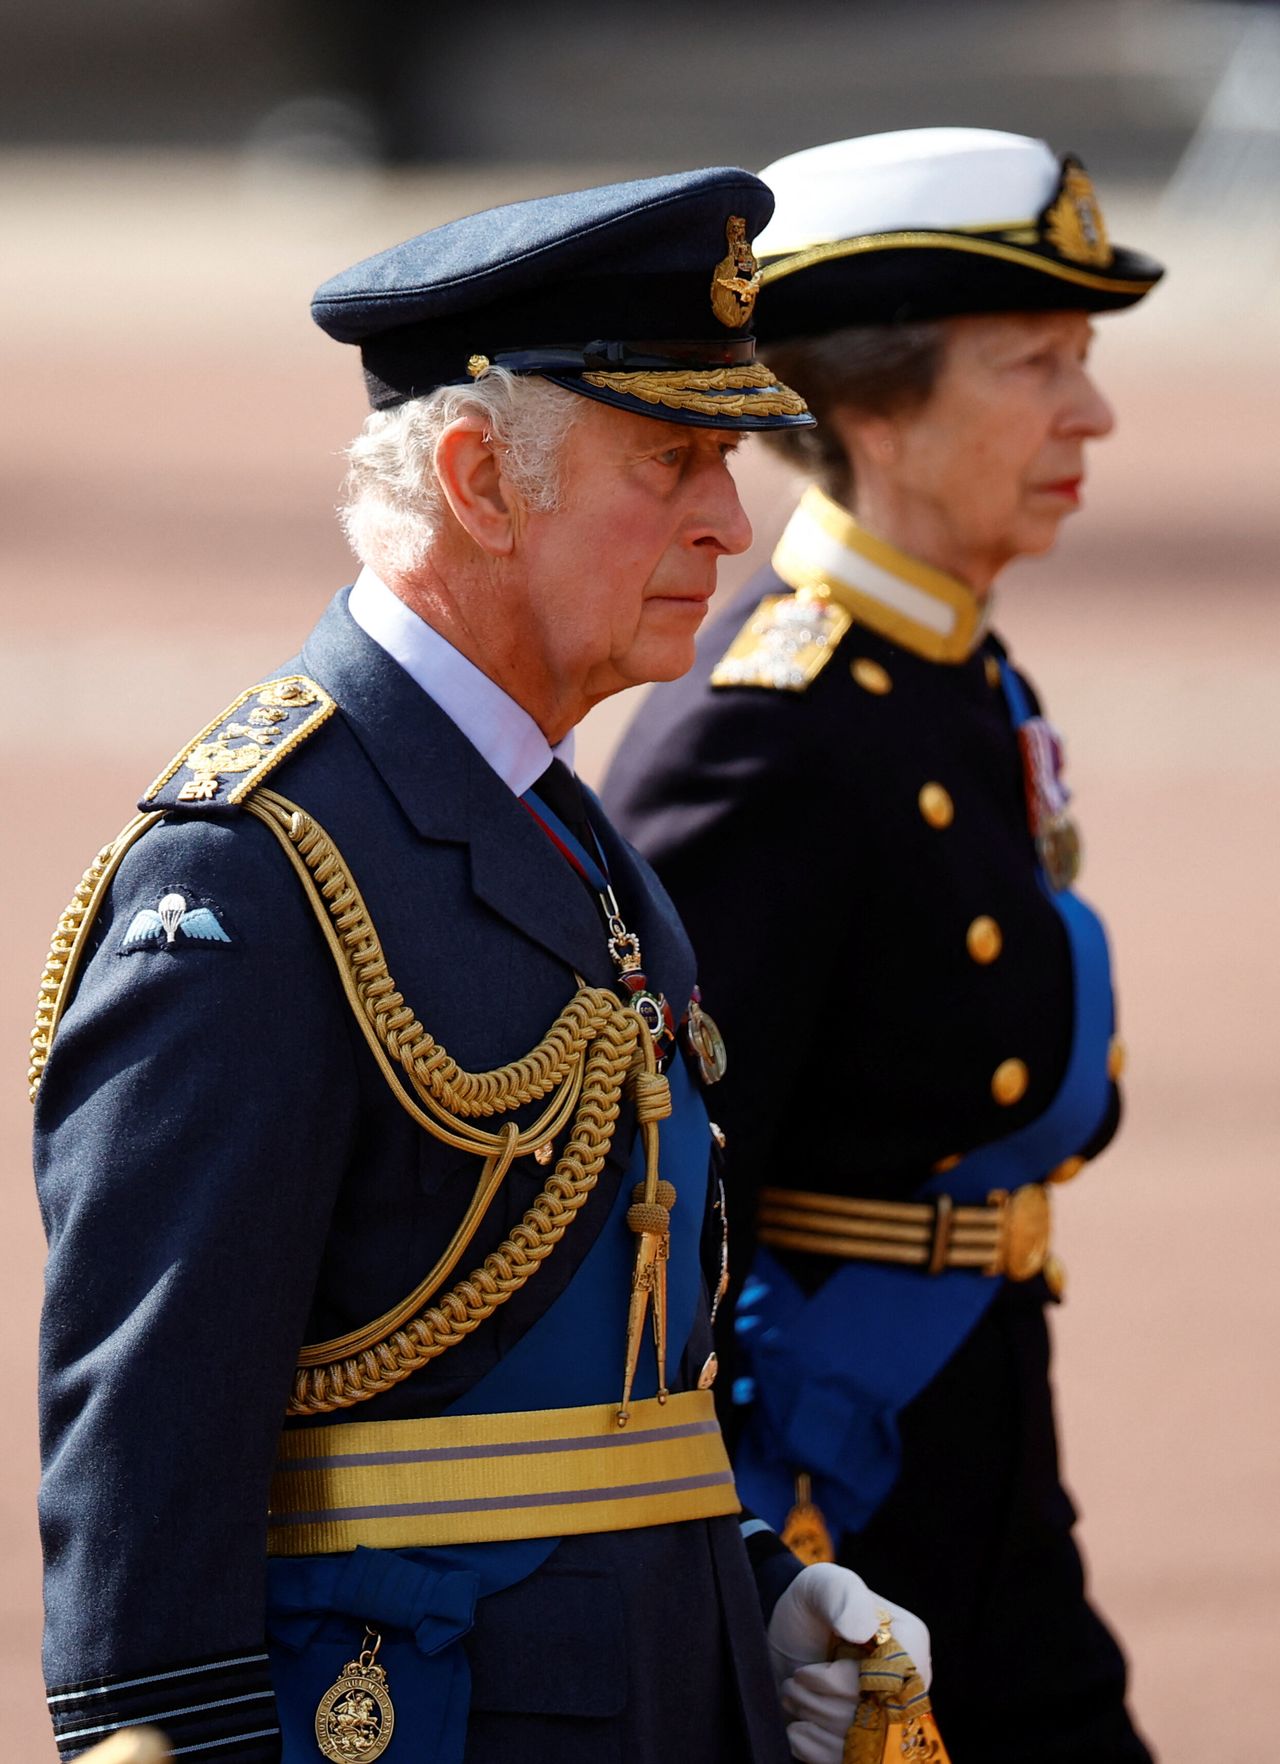 Ο βασιλιάς Κάρολος της Βρετανίας και η Άννα, η πριγκίπισσα της Βρετανίας παρελαύνουν κατά τη διάρκεια μιας πομπής όπου το φέρετρο της βασίλισσας της Βρετανίας Ελισάβετ μεταφέρεται από τα Ανάκτορα του Μπάκιγχαμ στα κτήρια του Κοινοβουλίου στο Λονδίνο, Βρετανία, 14 Σεπτεμβρίου 2022. REUTERS/Sarah Meyssonnier